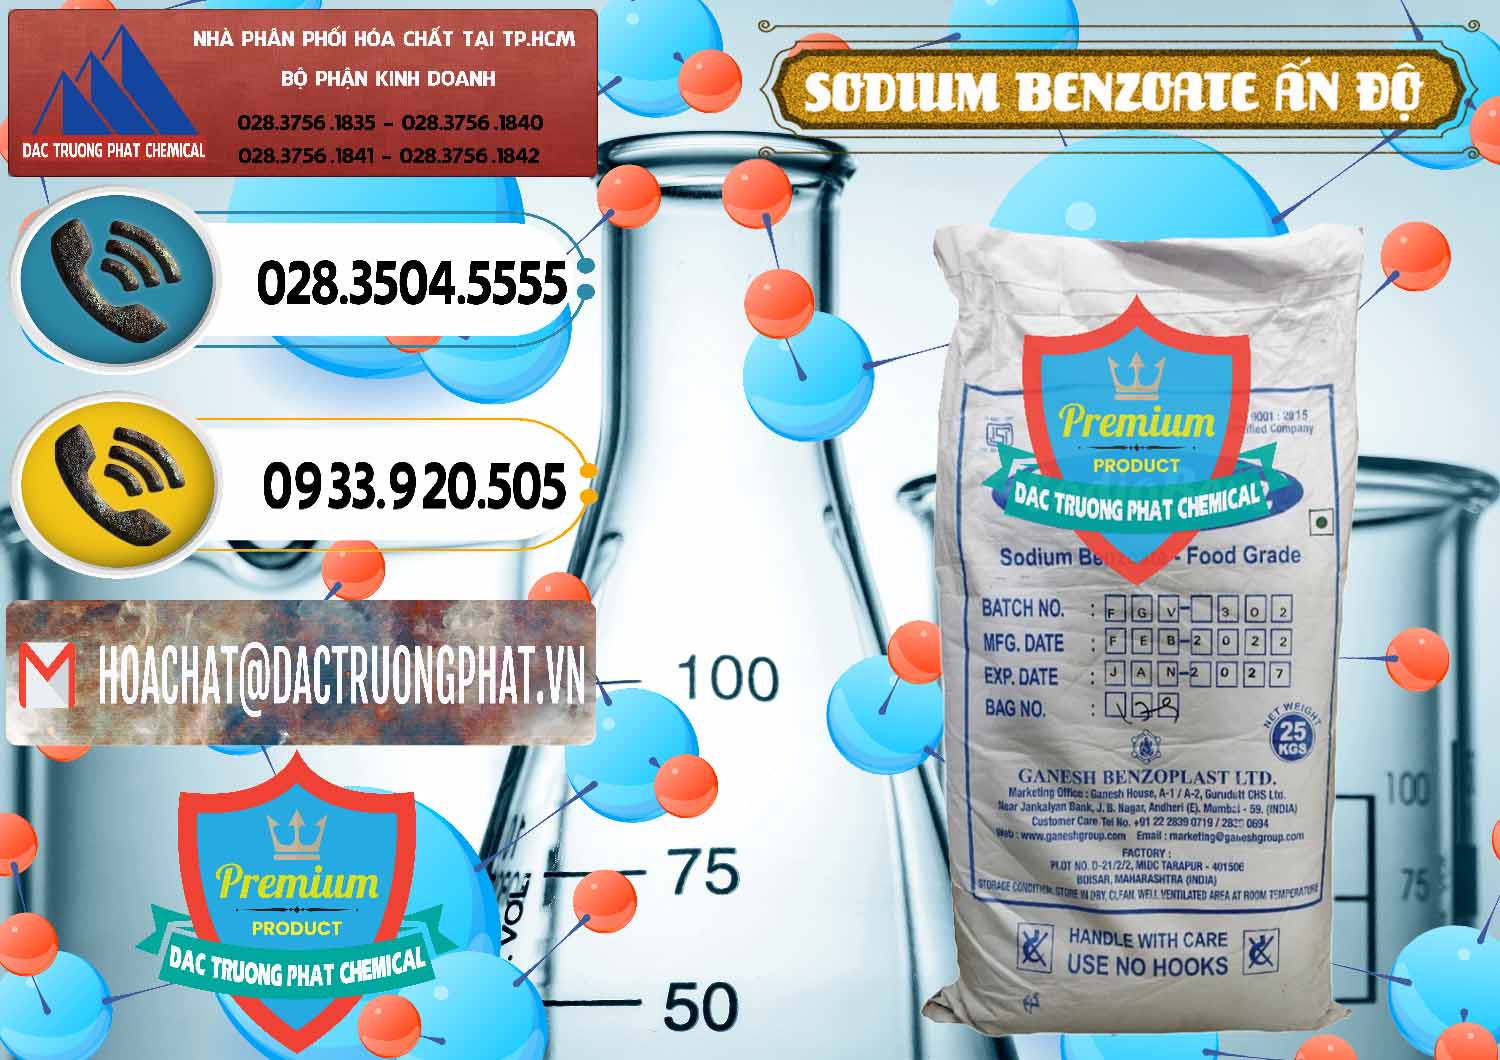 Công ty chuyên kinh doanh - bán Sodium Benzoate - Mốc Bột Ấn Độ India - 0361 - Đơn vị kinh doanh và cung cấp hóa chất tại TP.HCM - hoachatdetnhuom.vn